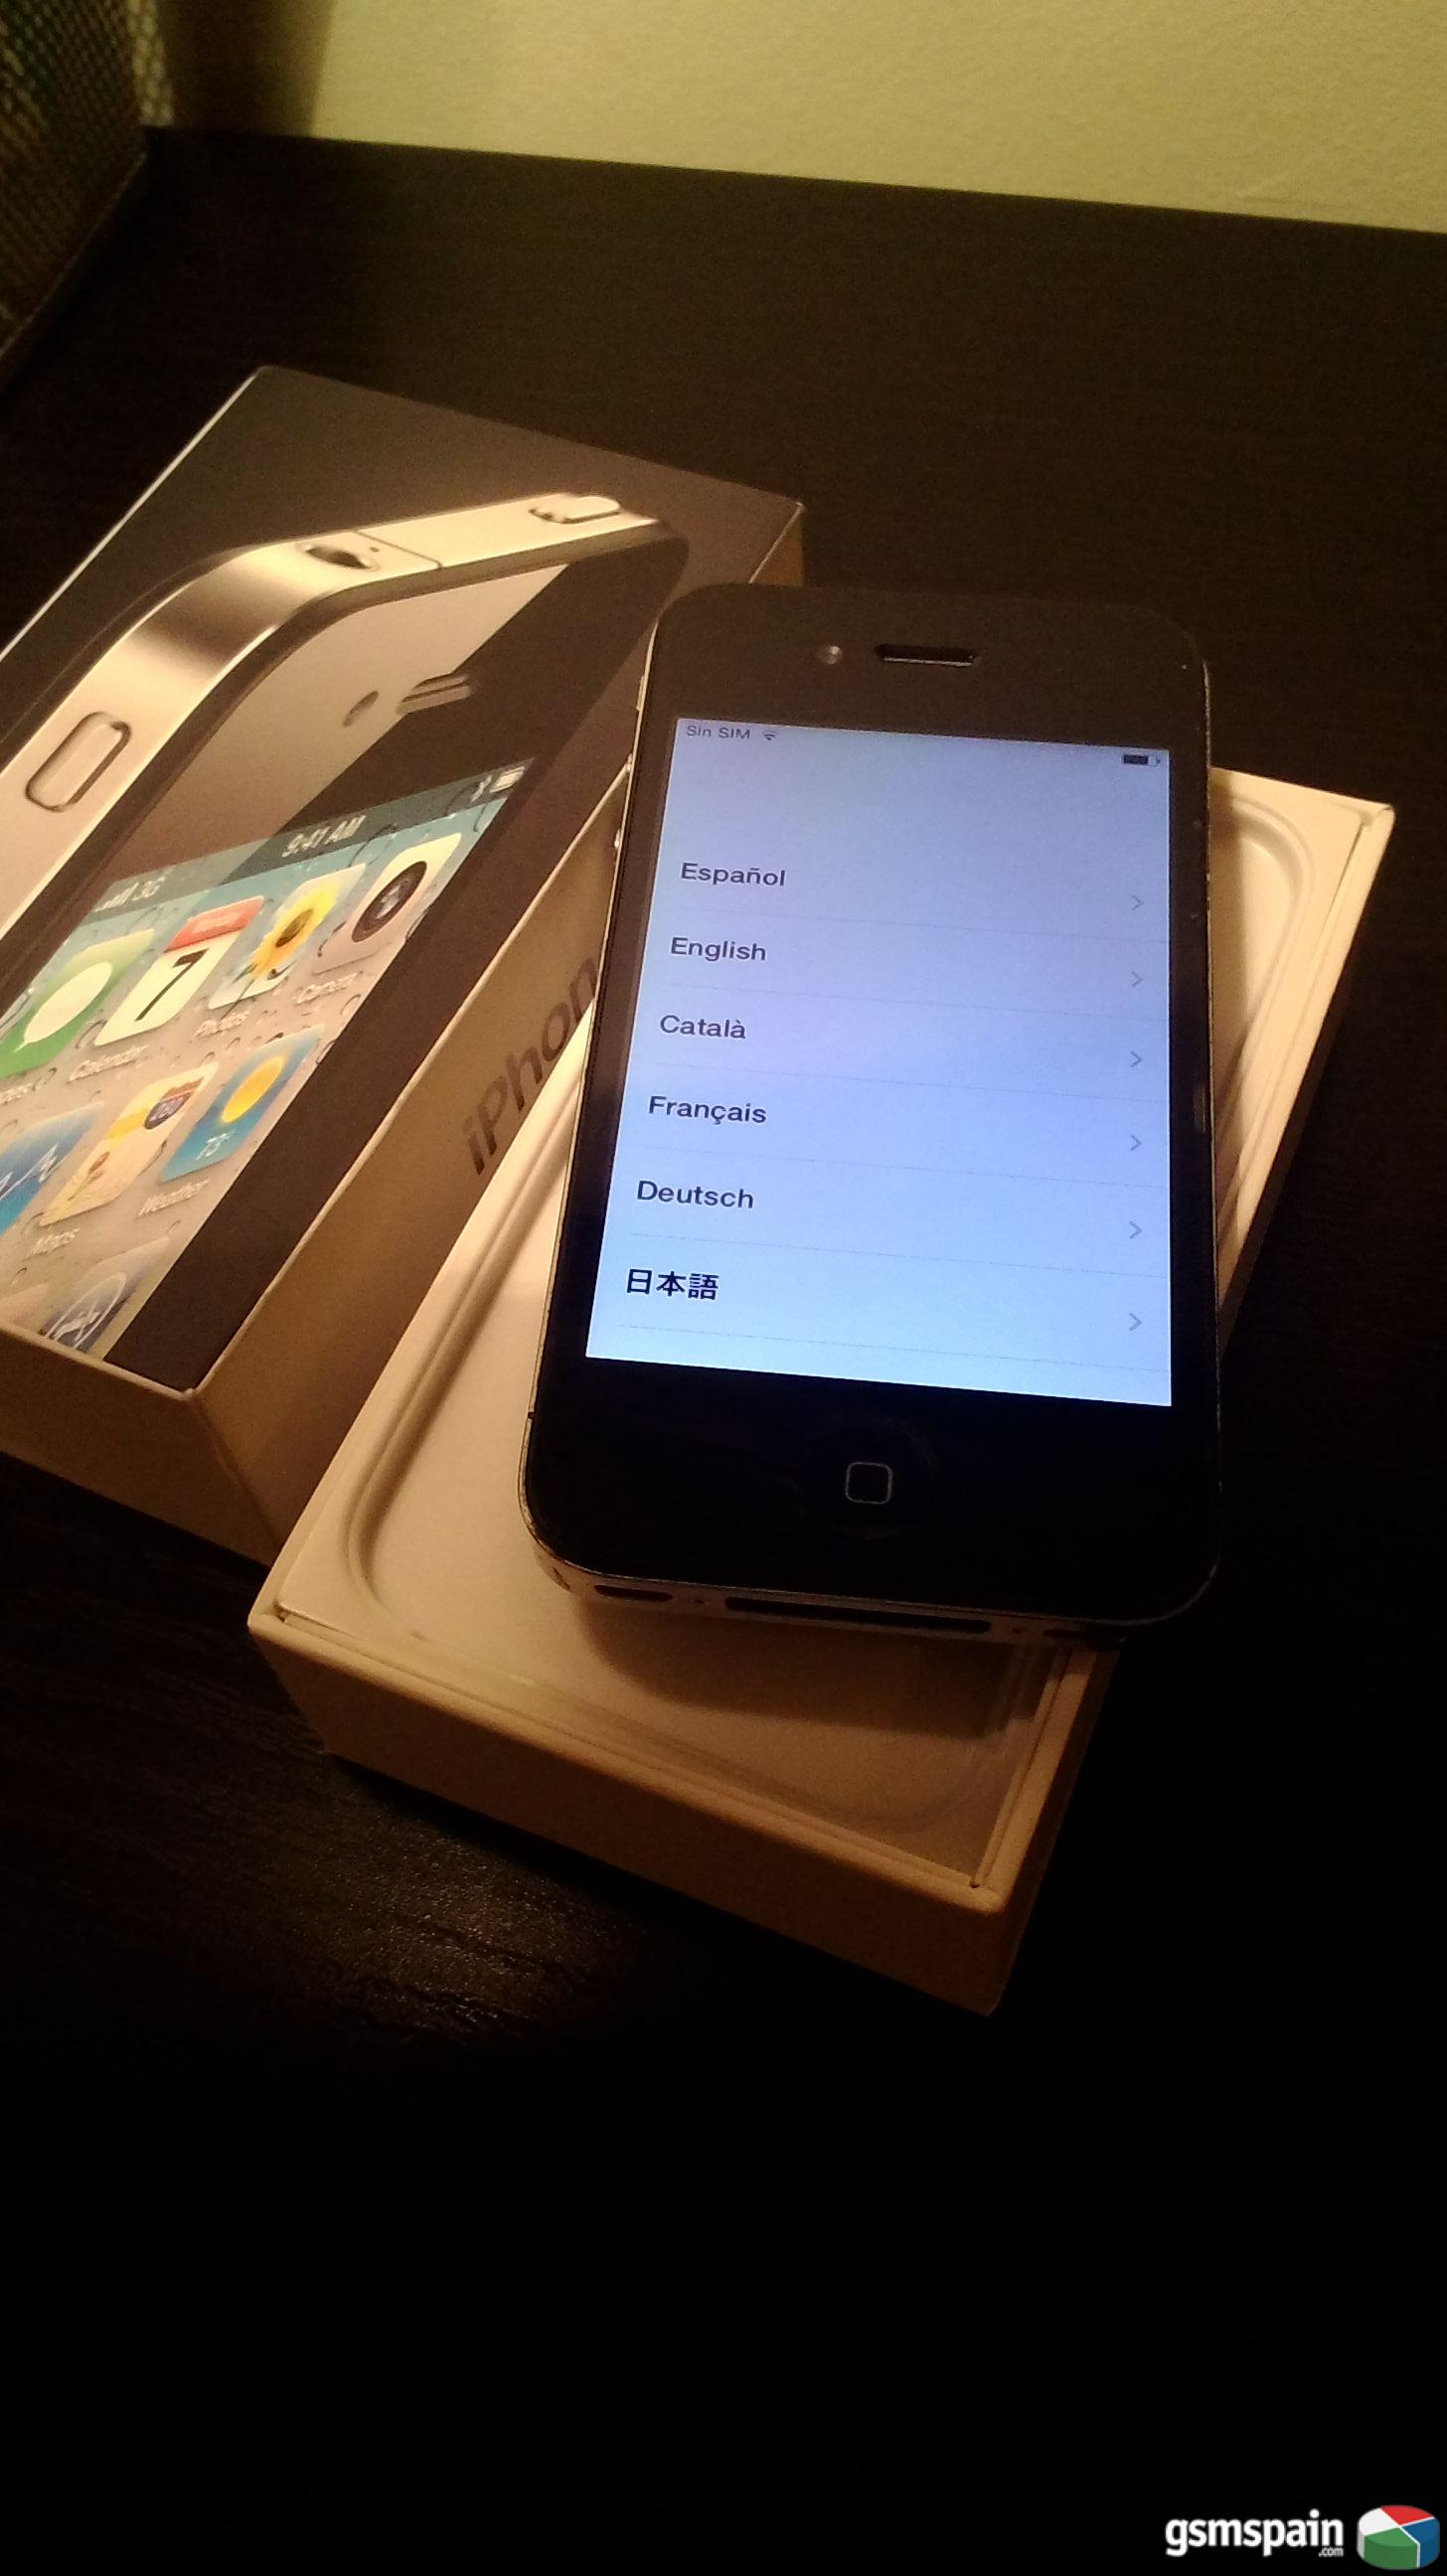 [VENDO] Iphone 4 (libre con caja original y factura)